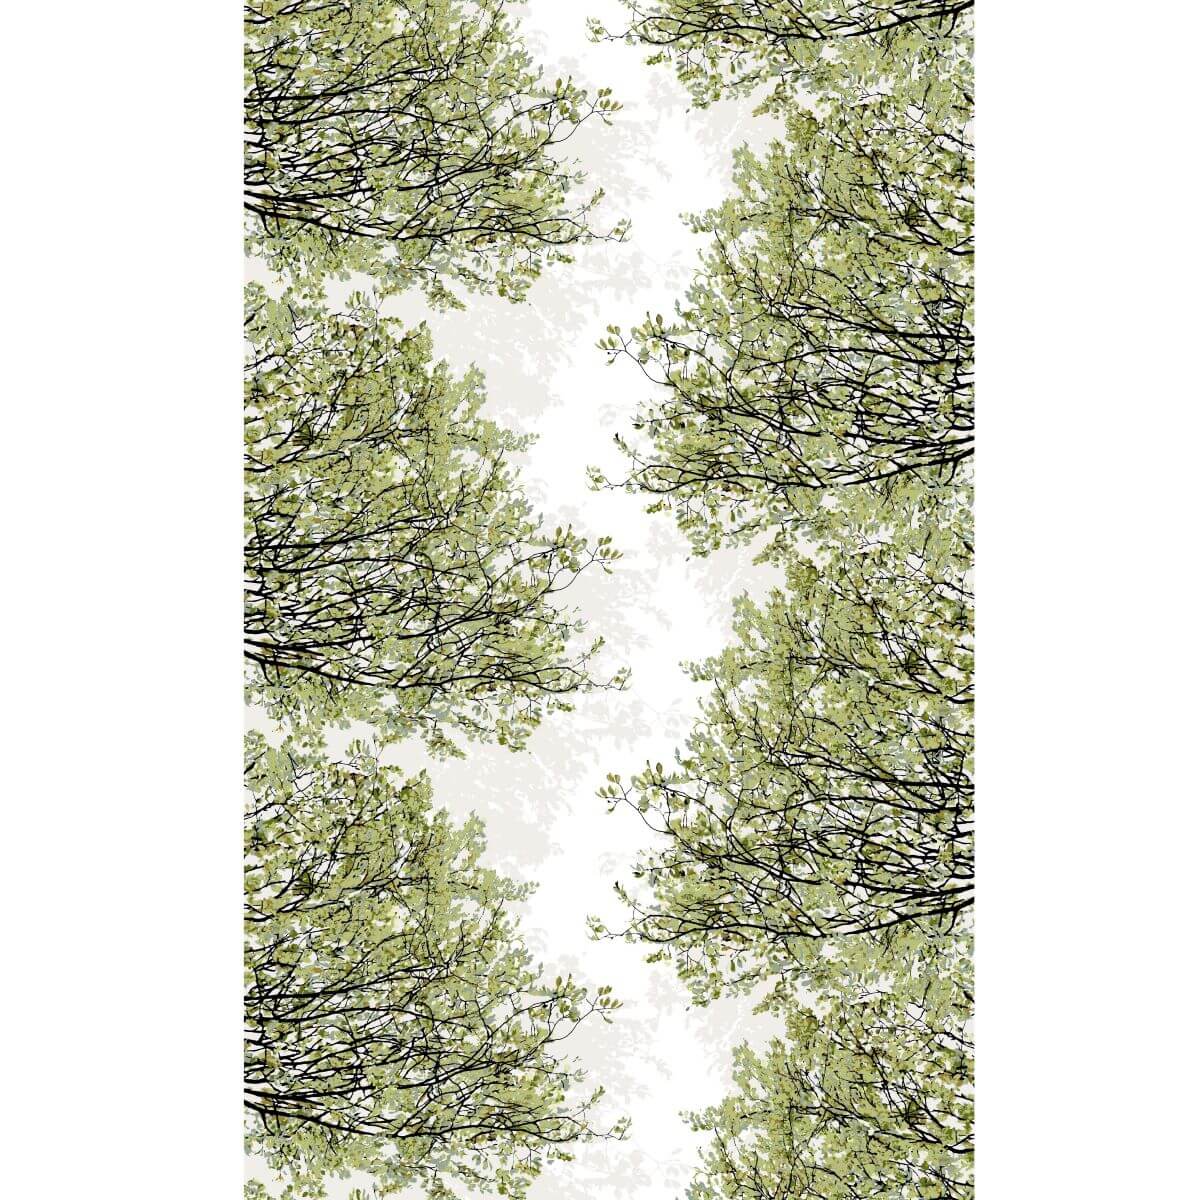 Zasłony bawełniane HAVINA. Wzór zasłony w drobne gałęzie i liście drzewa w odcieniach koloru zielonego na białym tle. Skandynawski design